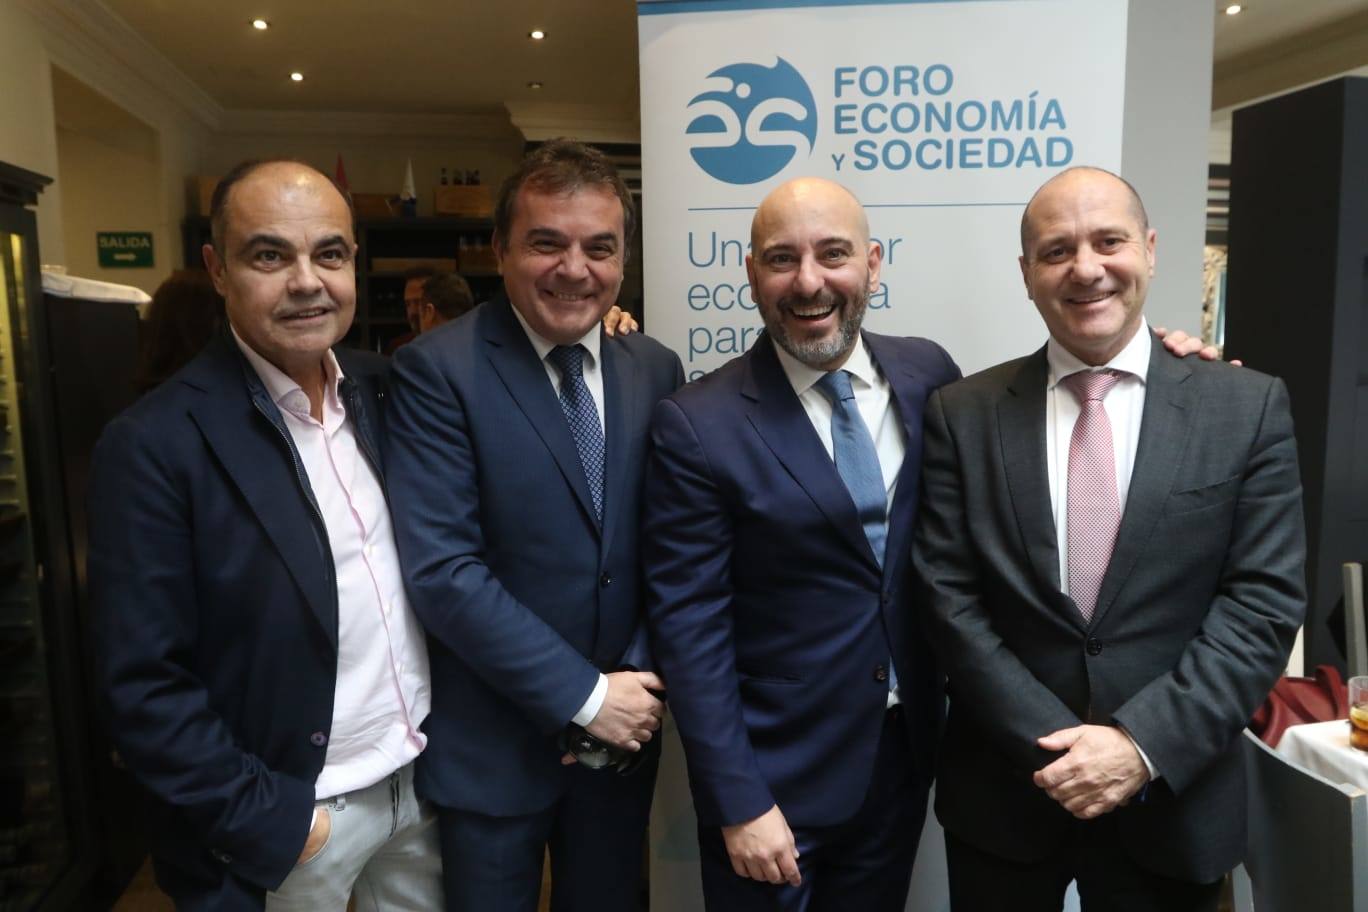 El Foro de Economía invita a Jaime Ordóñez. En la foto, Daniel Pastor, Jesús Fortes, Jaime Ordóñez y Julio Andrade.